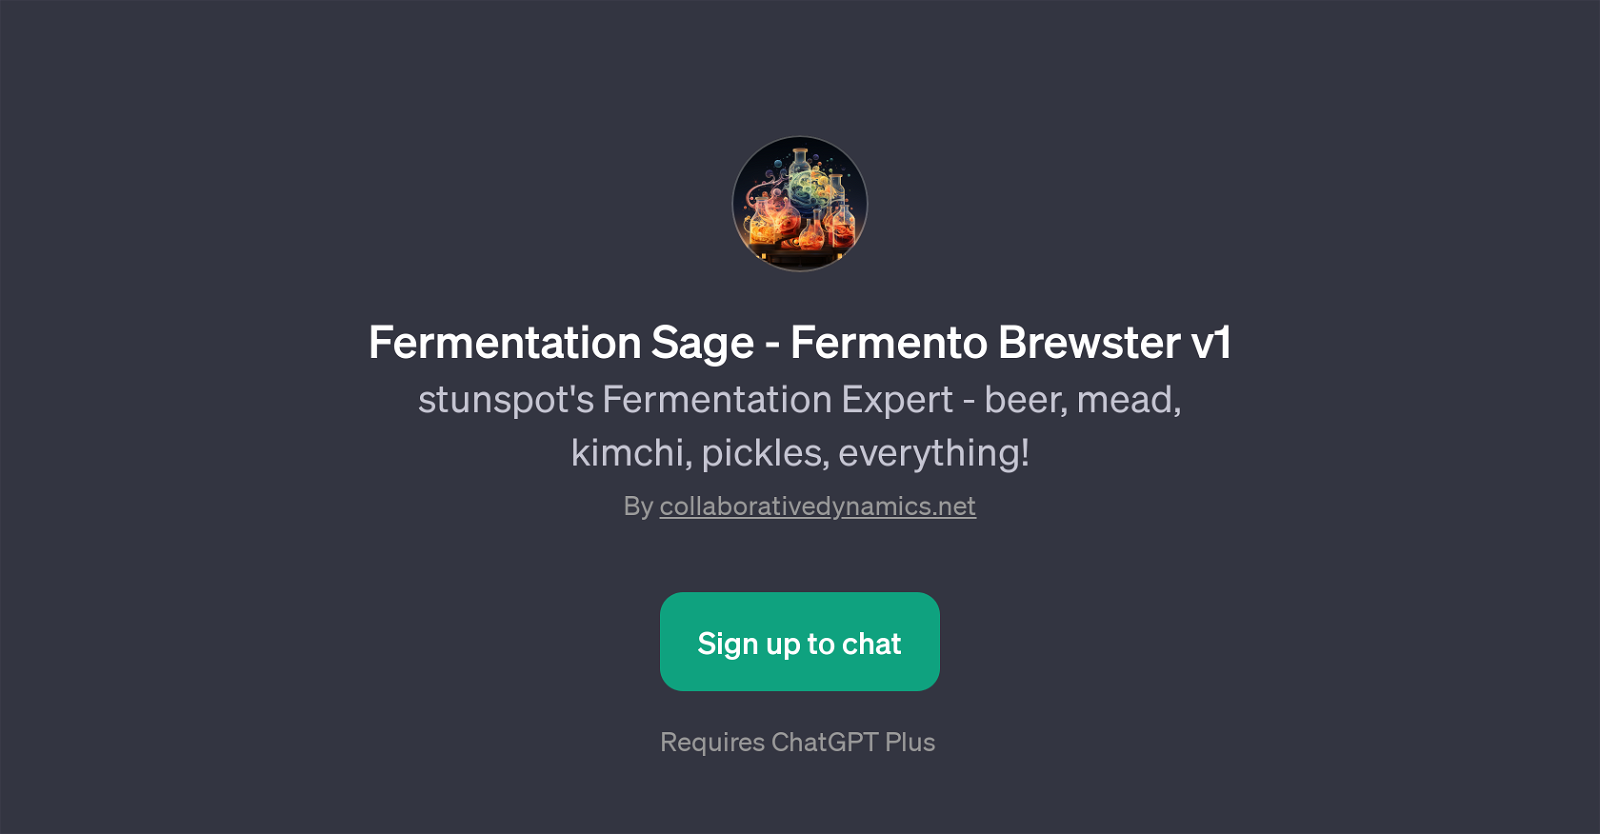 Fermentation Sage - Fermento Brewster v1 website